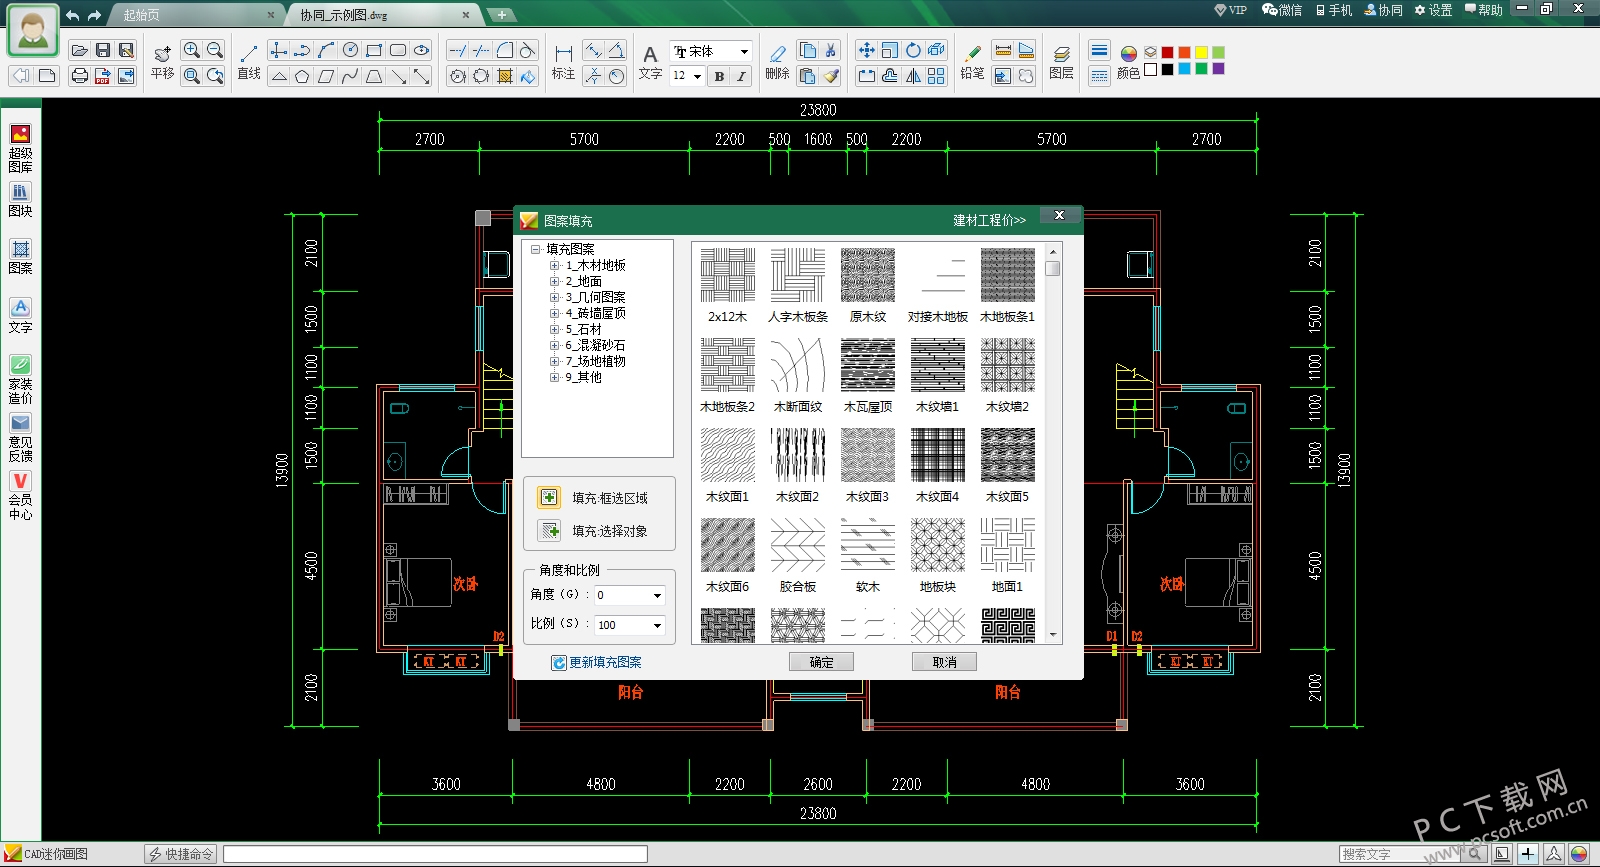 CAD迷你画图软件电脑客户端-CAD迷你画图软件便携版v2020R2 绿色版-米6体育官方网站